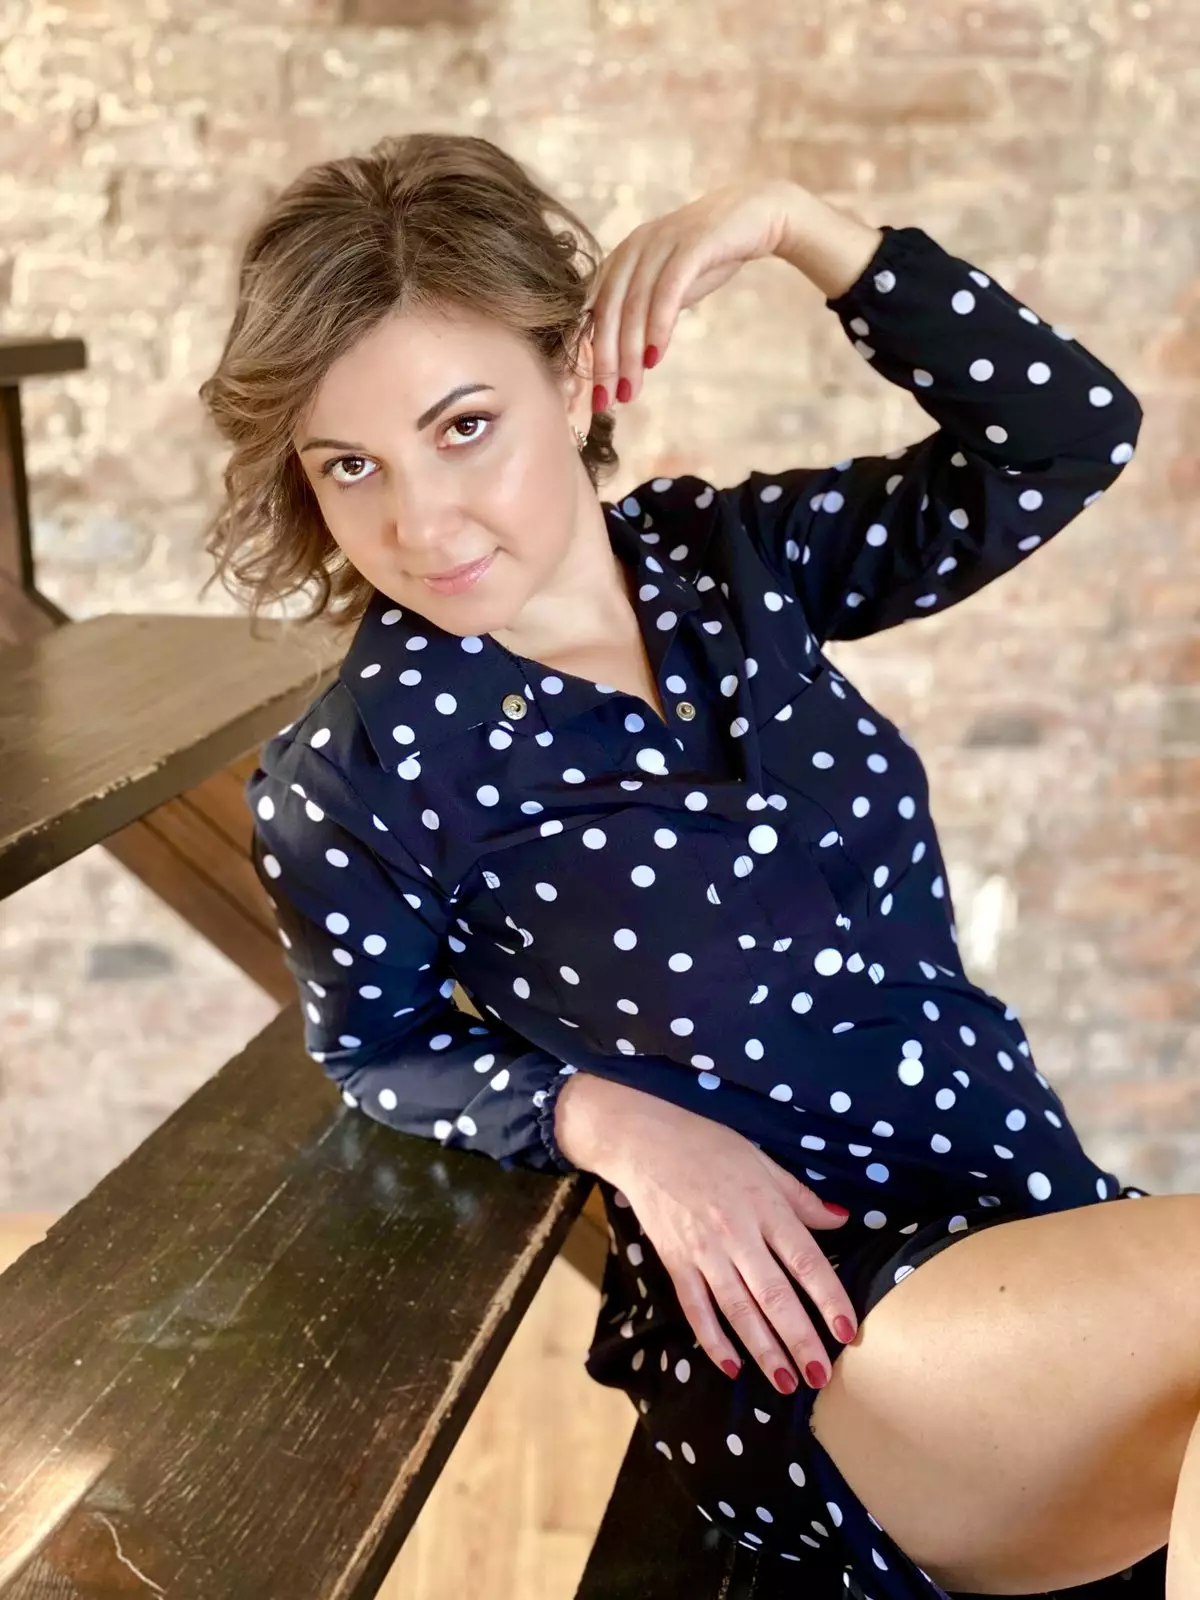 Anastasija K, 36